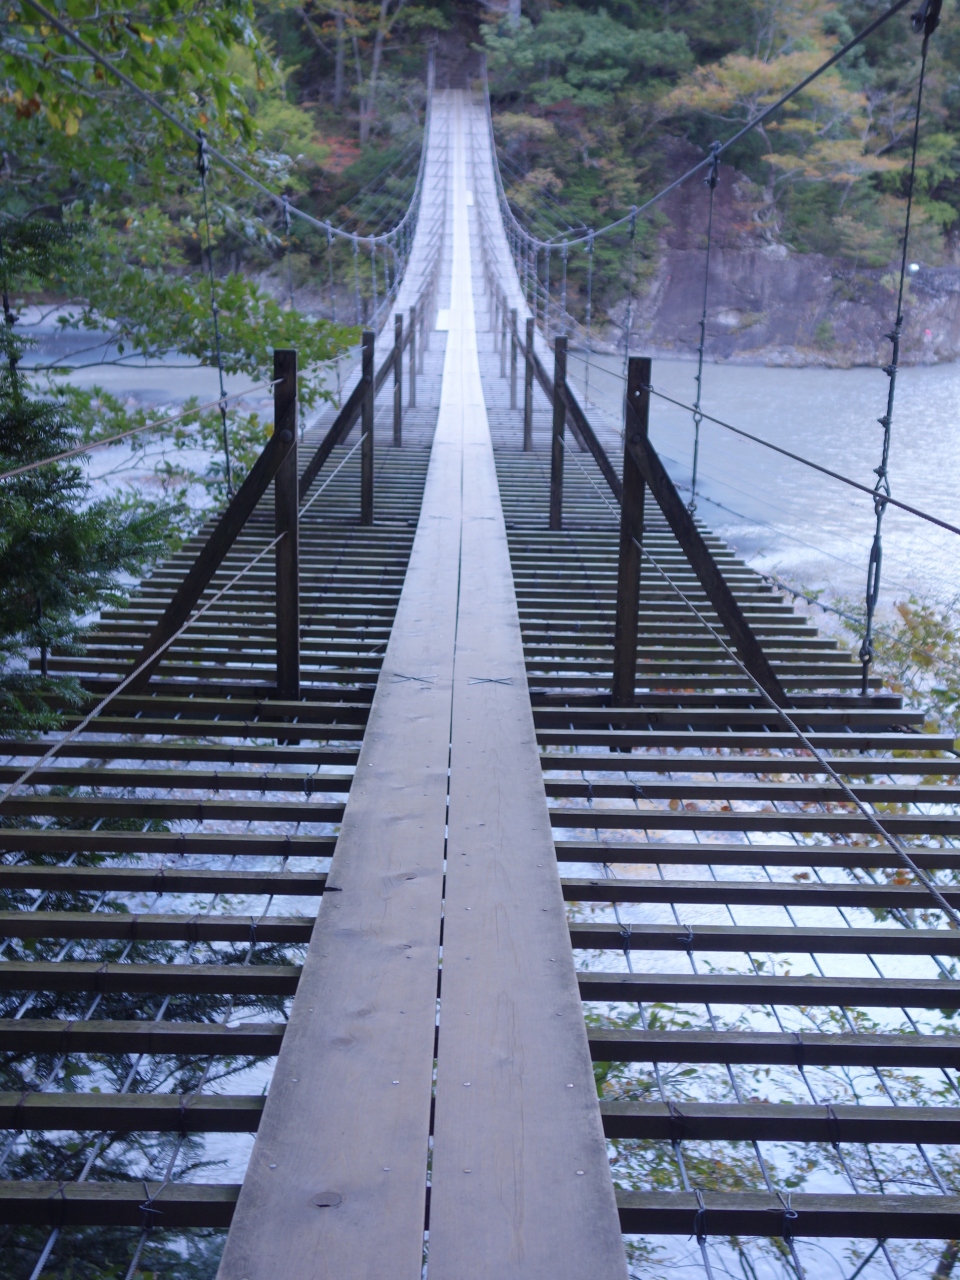 寸又峡 夢の吊橋までの道もけっこうしんどかった でも良い吊橋だった 寸又峡温泉 静岡県 の旅行記 ブログ By Nomonomoさん フォートラベル